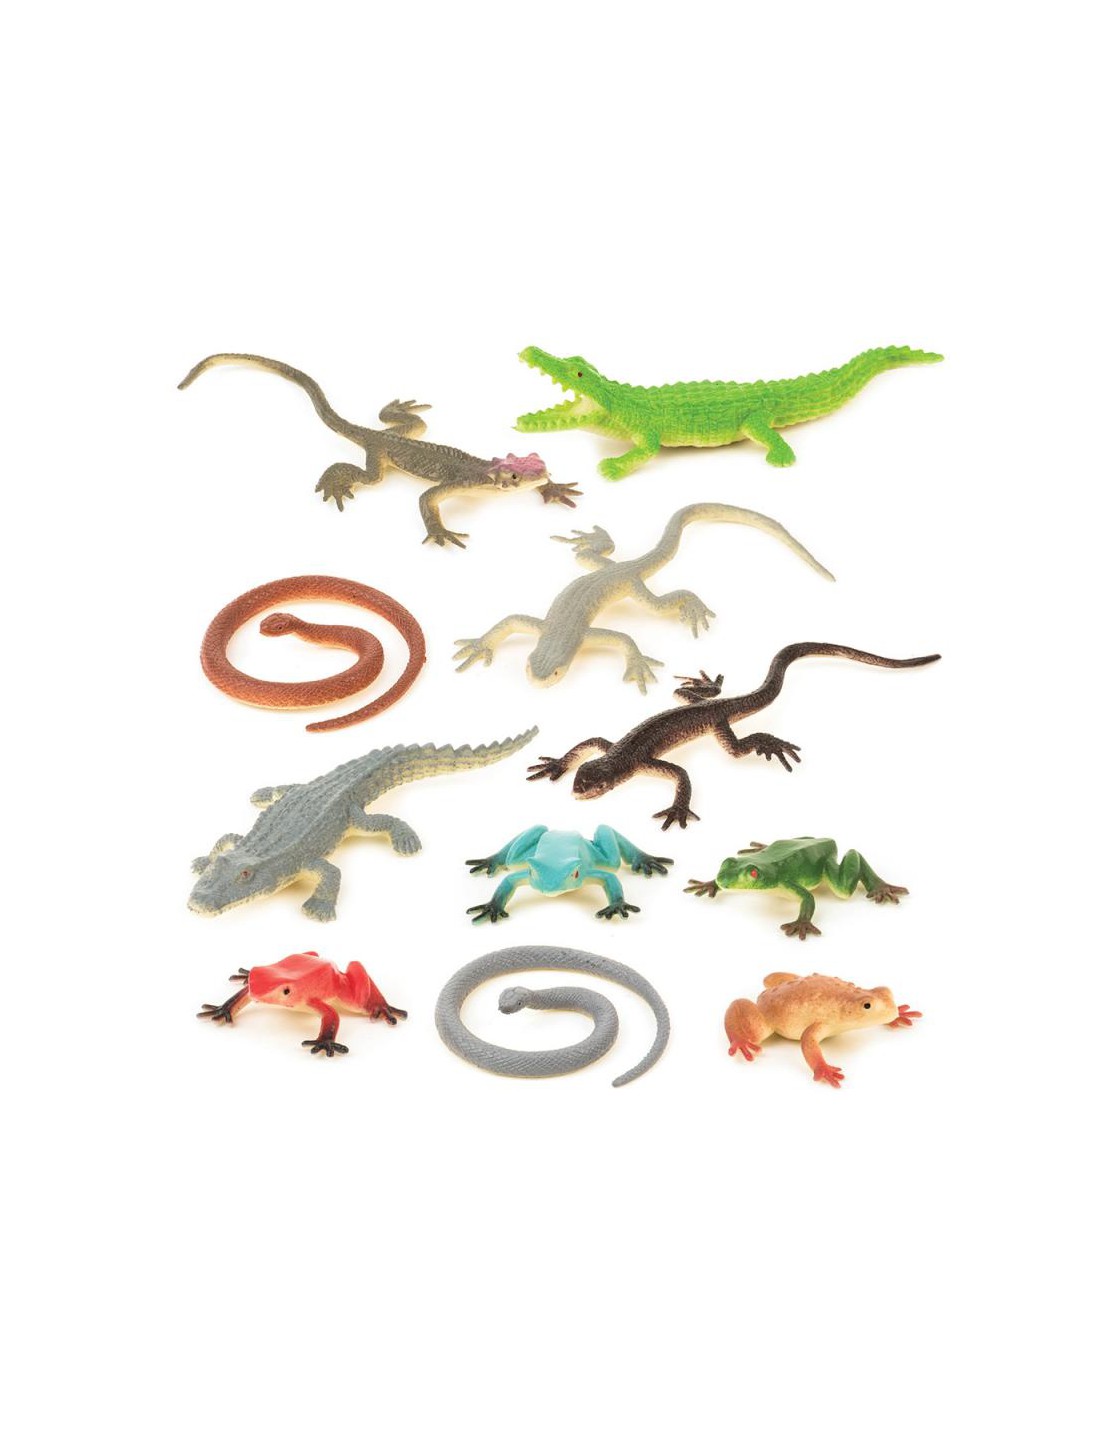 Miniaturas de reptiles.